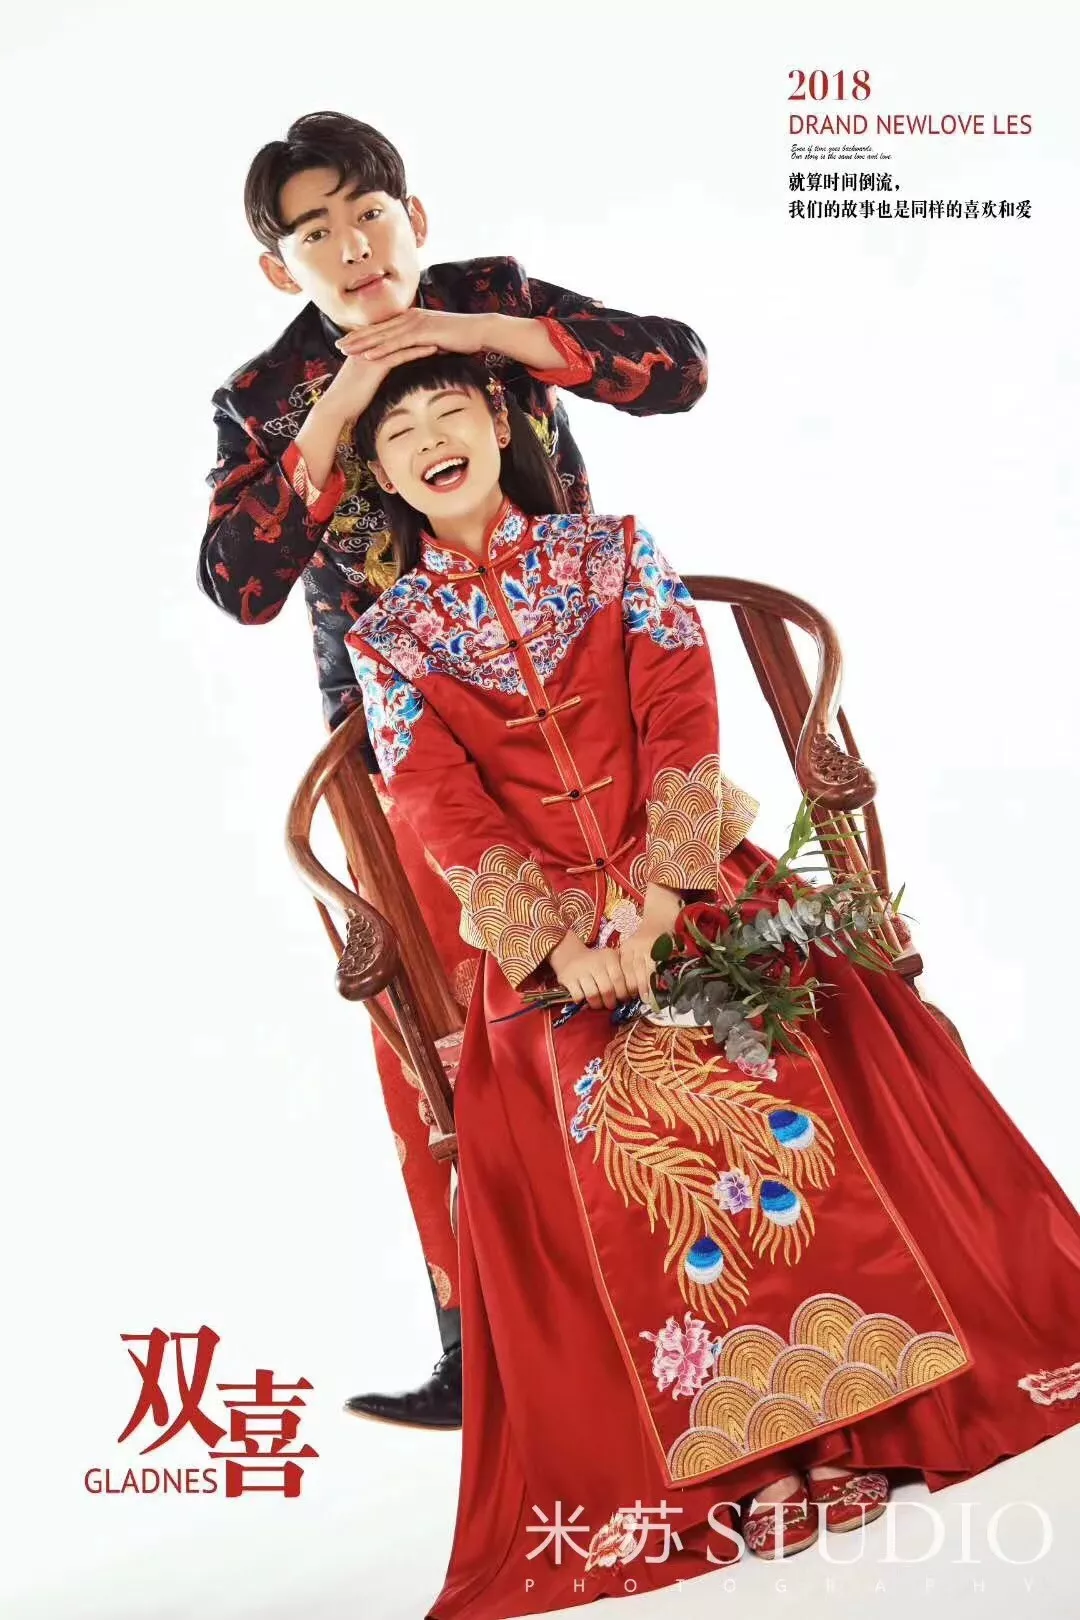 现代中式婚纱照图片_中式婚纱照(3)